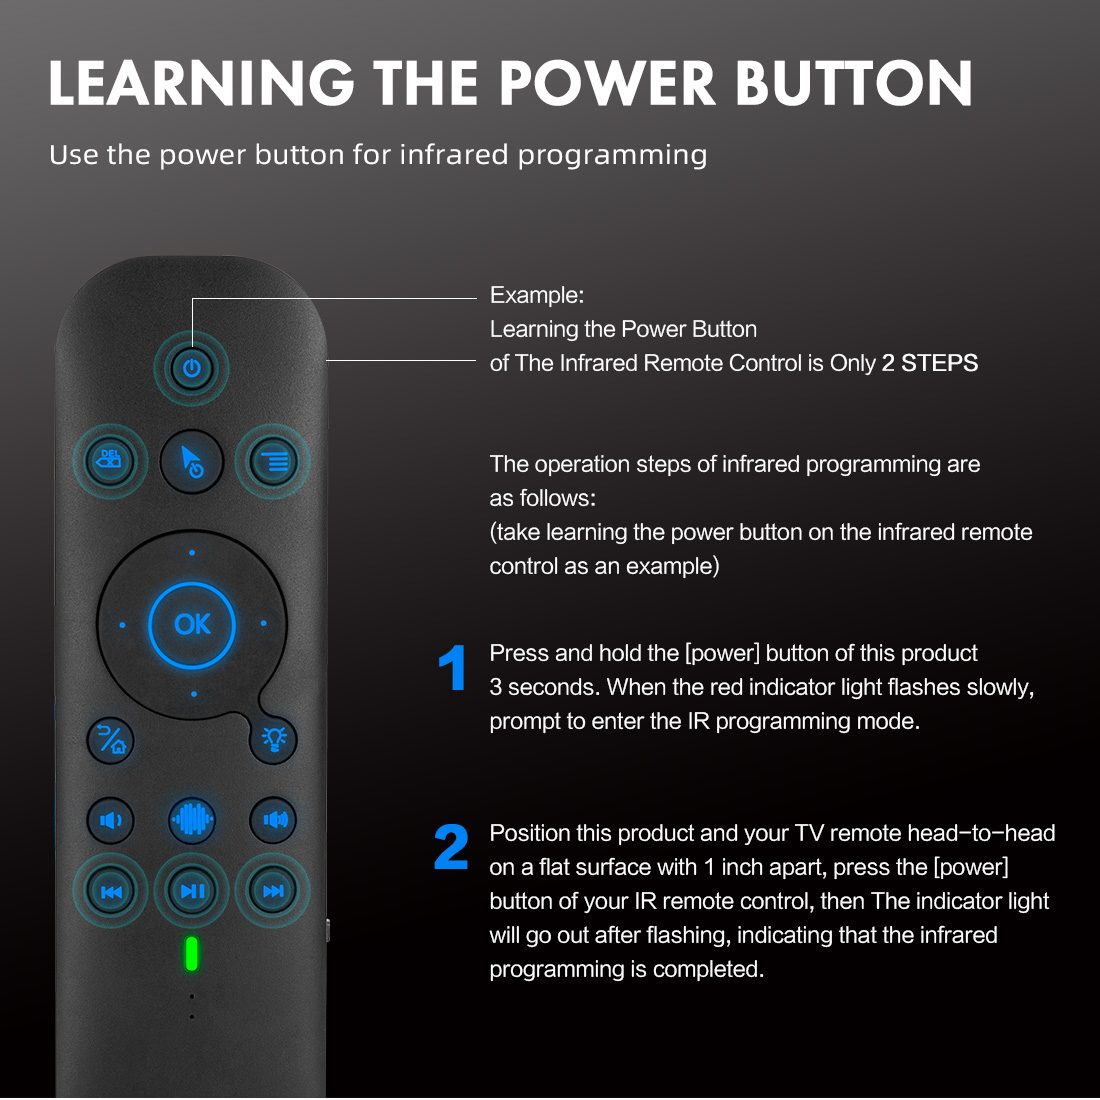 G60S Pro Air Mouse Wireless Voice Remote Control 2.4G Bluetooth Dual Mode IR Lärande med bakgrundsbelyst för dator -TV -låda Projektor